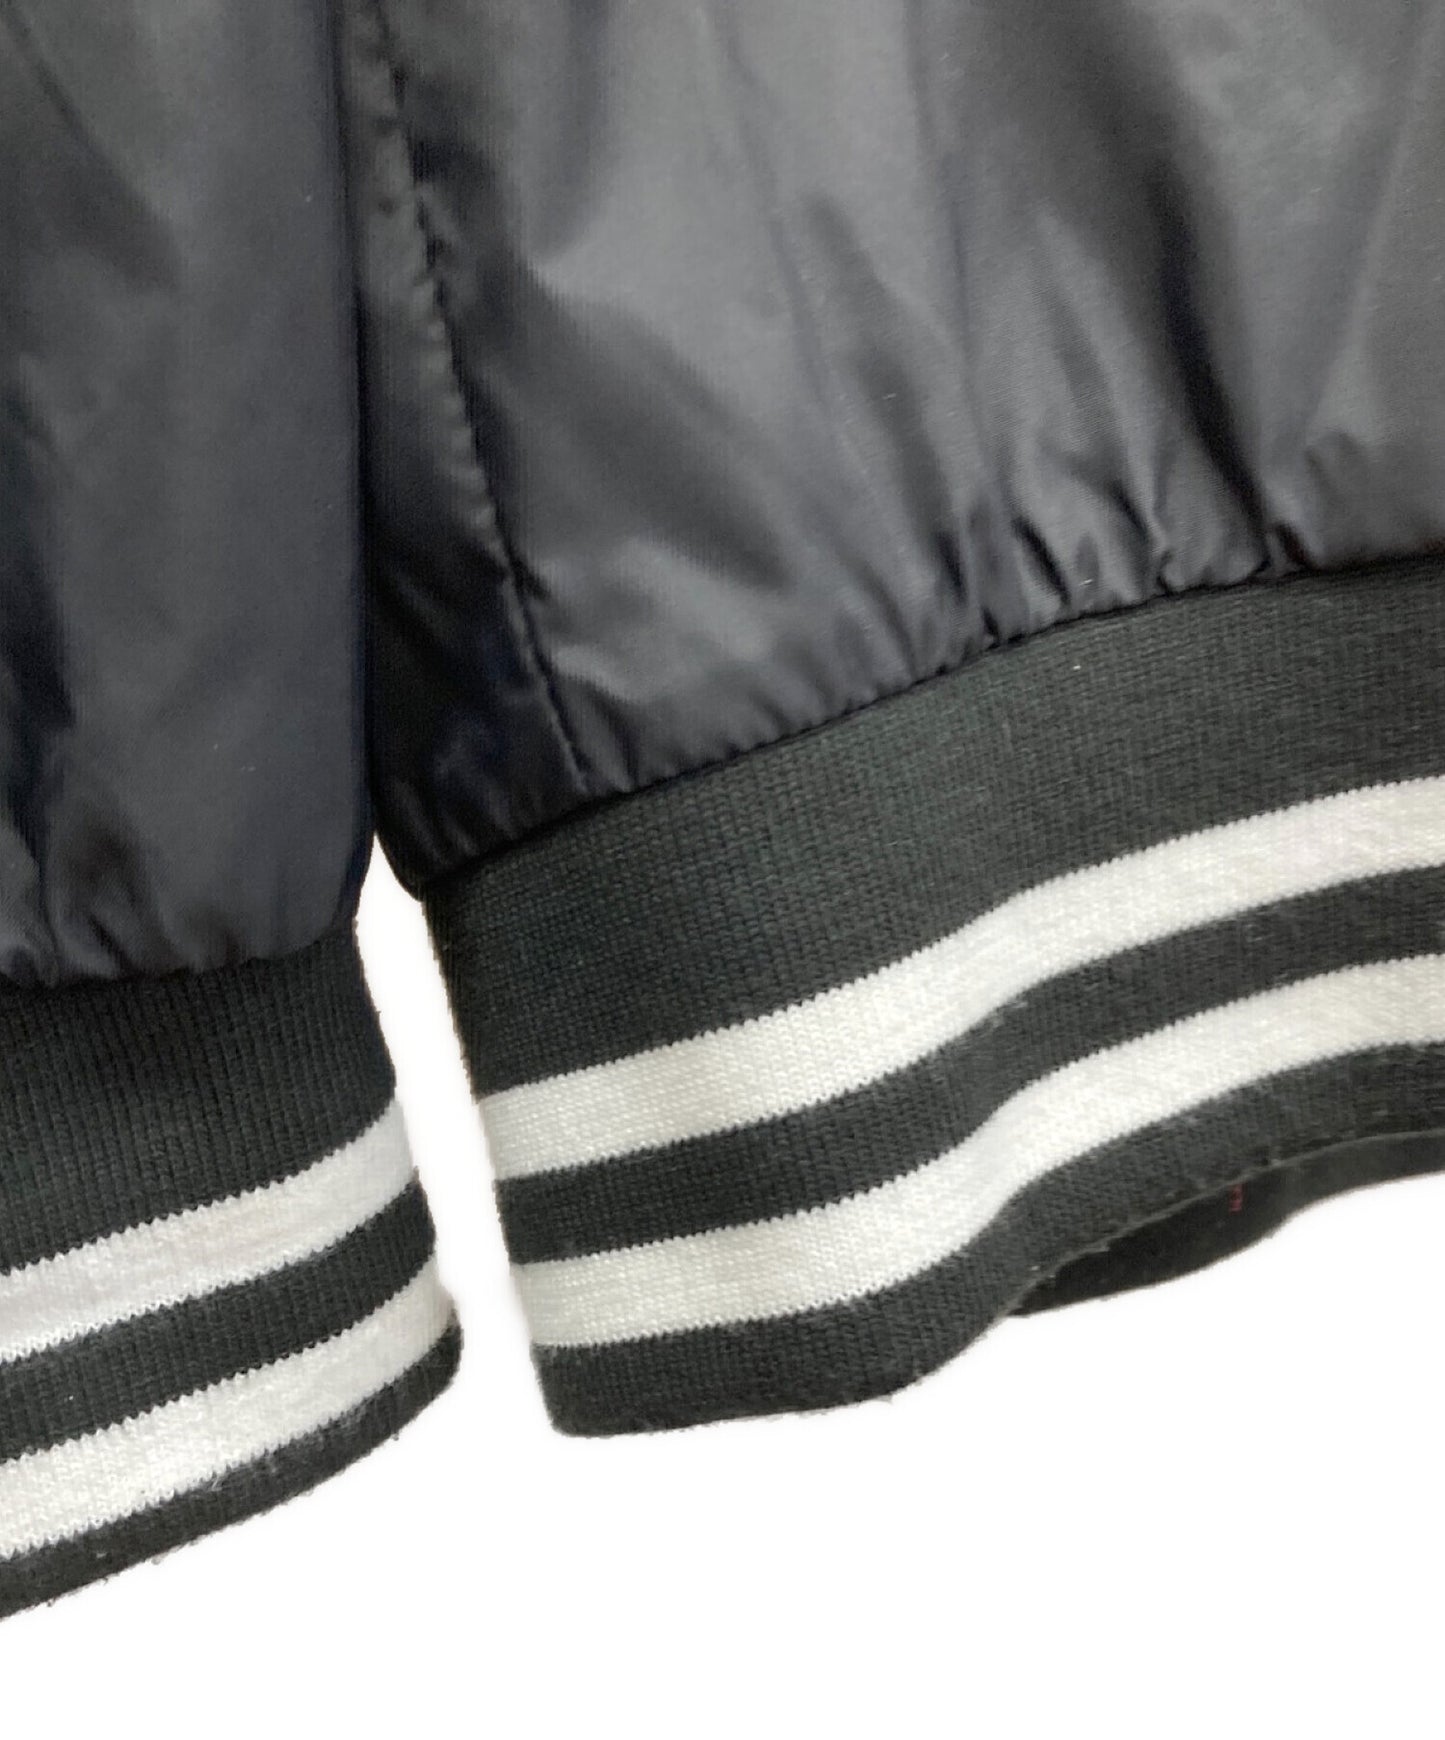 [Pre-owned] COMME des GARCONS Varsity jacket nylon jacket SZ-J006